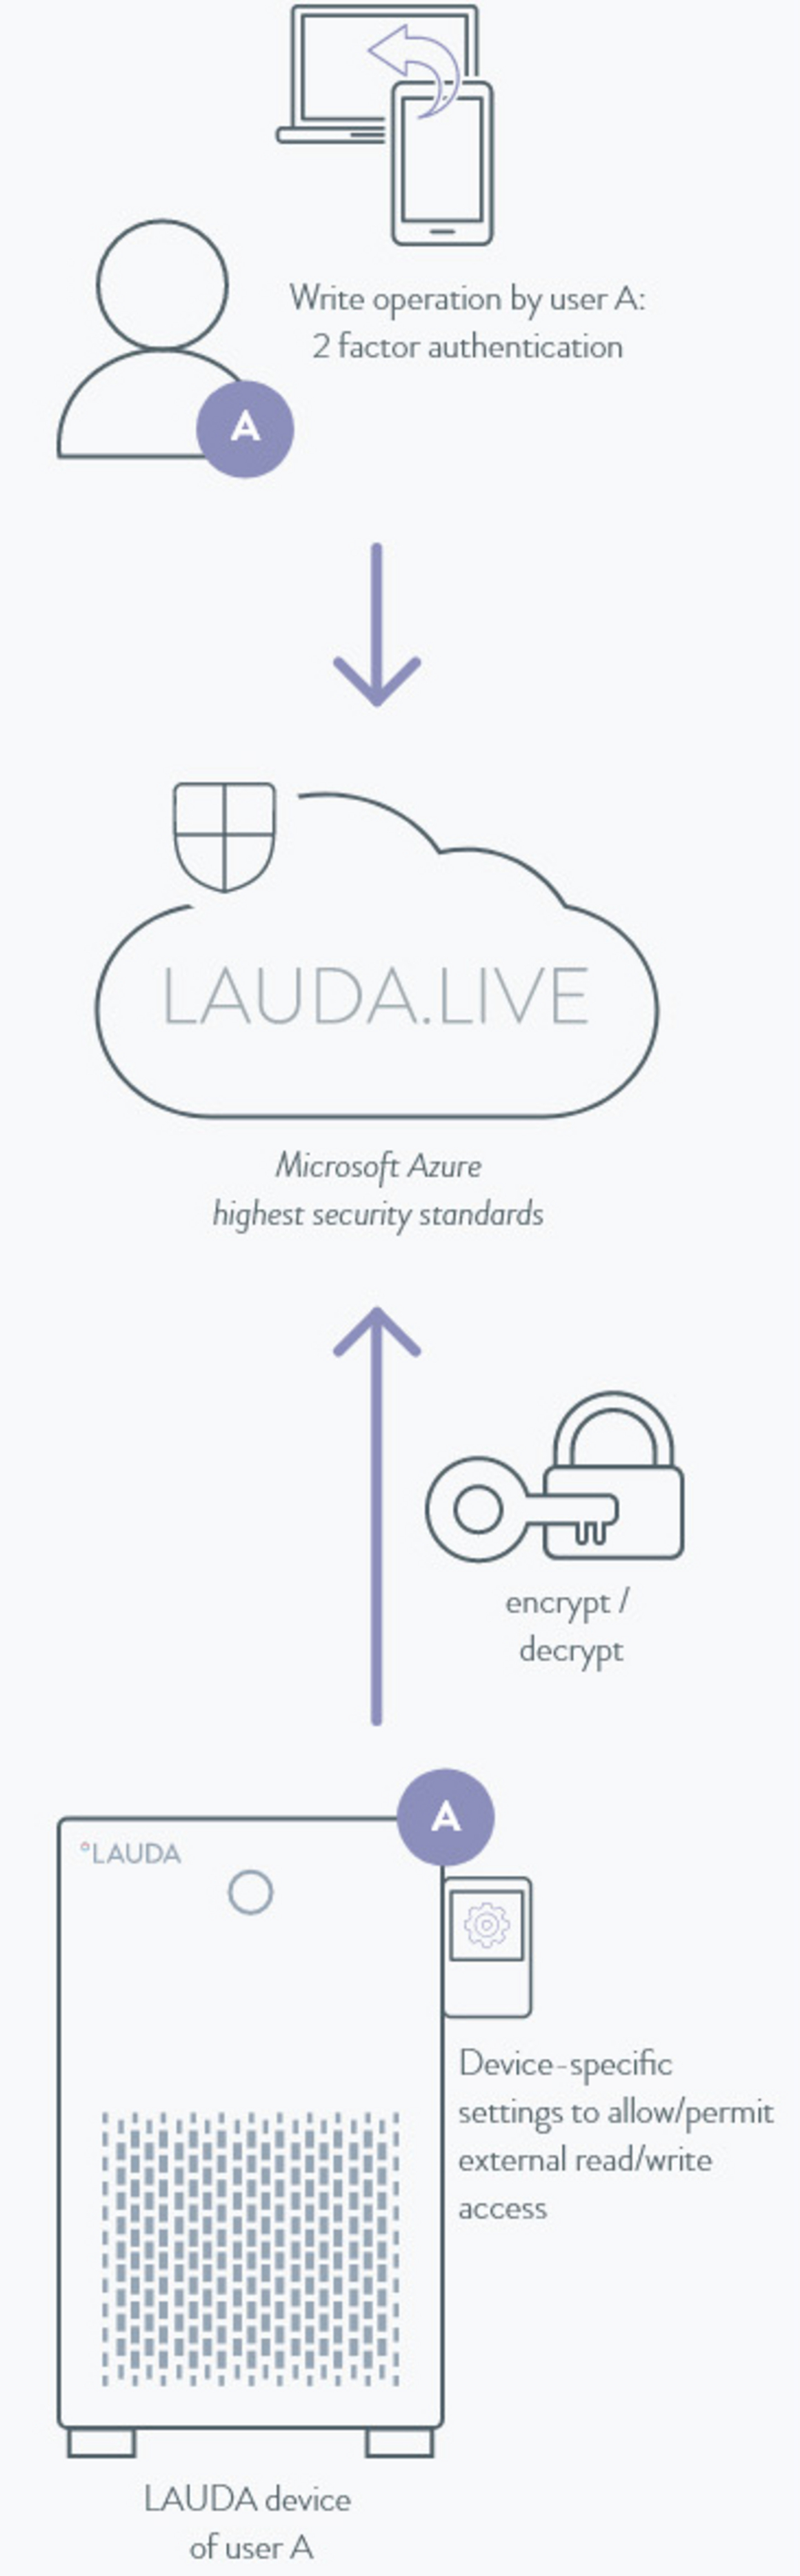 Схематическое представление функций обеспечения безопасности LAUDA.LIVE.